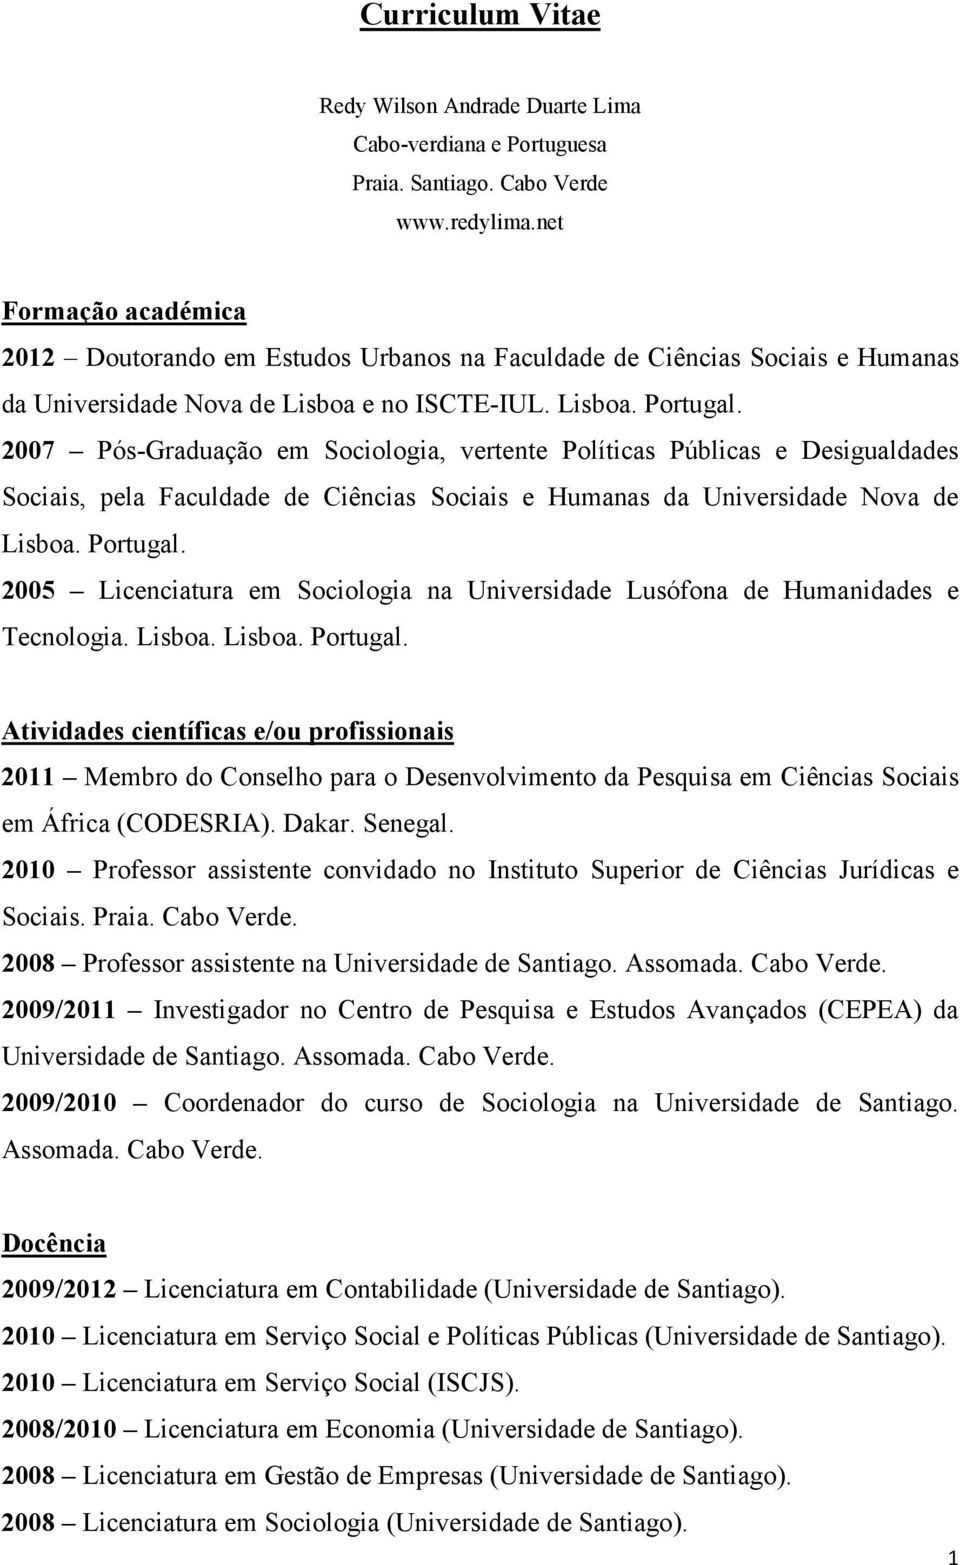 2007 Pós-Graduação em Sociologia, vertente Políticas Públicas e Desigualdades Sociais, pela Faculdade de Ciências Sociais e Humanas da Universidade Nova de Lisboa. Portugal.